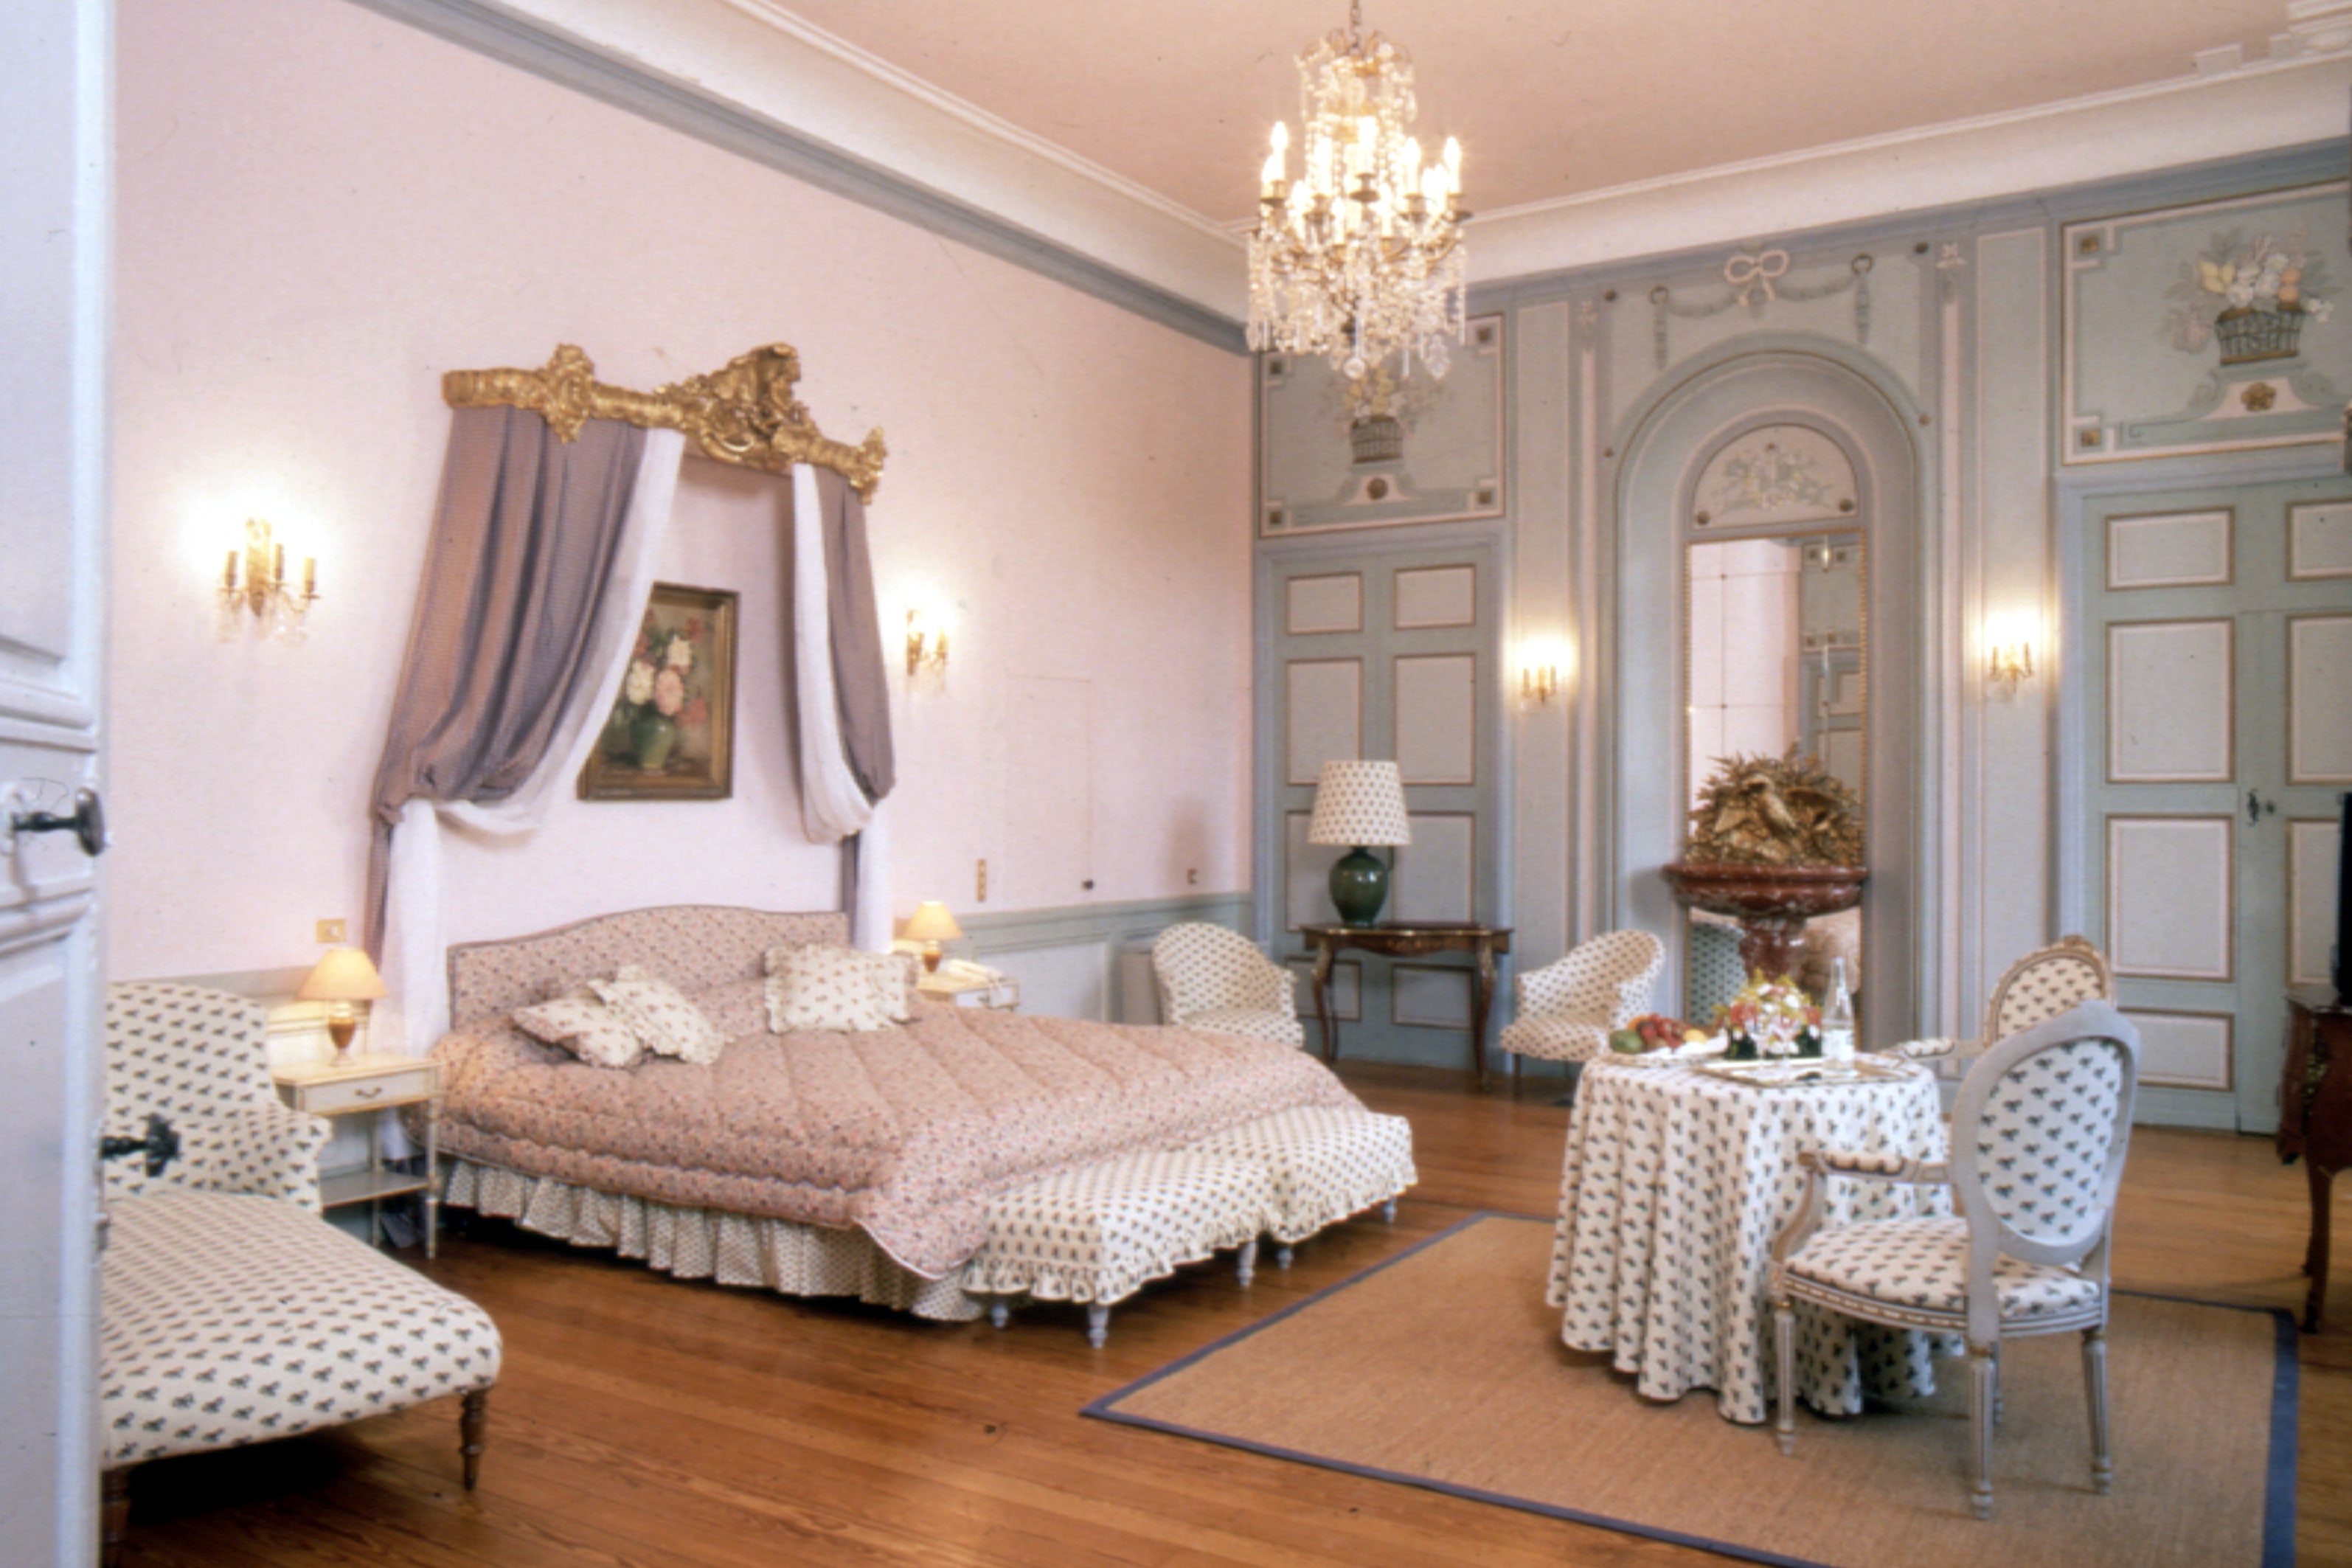 Chambre style baroque avec tissus provençaux et sol en parquet bois.